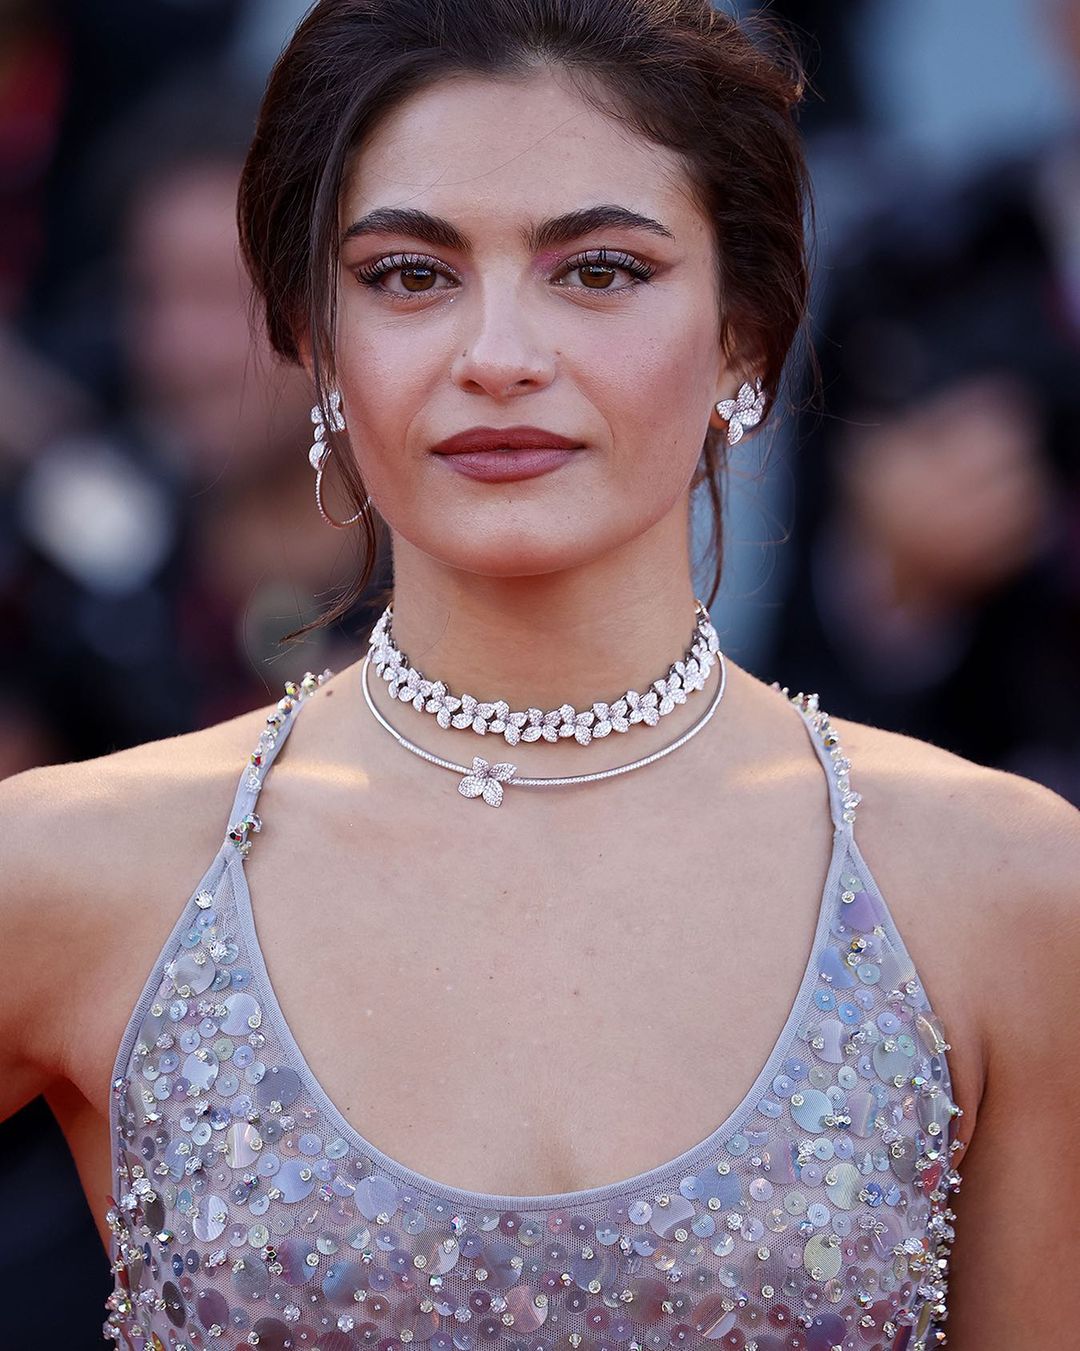 الممثلة الإيطالية أوروا جويفينازو Aurora Giovinazzo بمجوهرات ماسية من Pasquale Bruni.